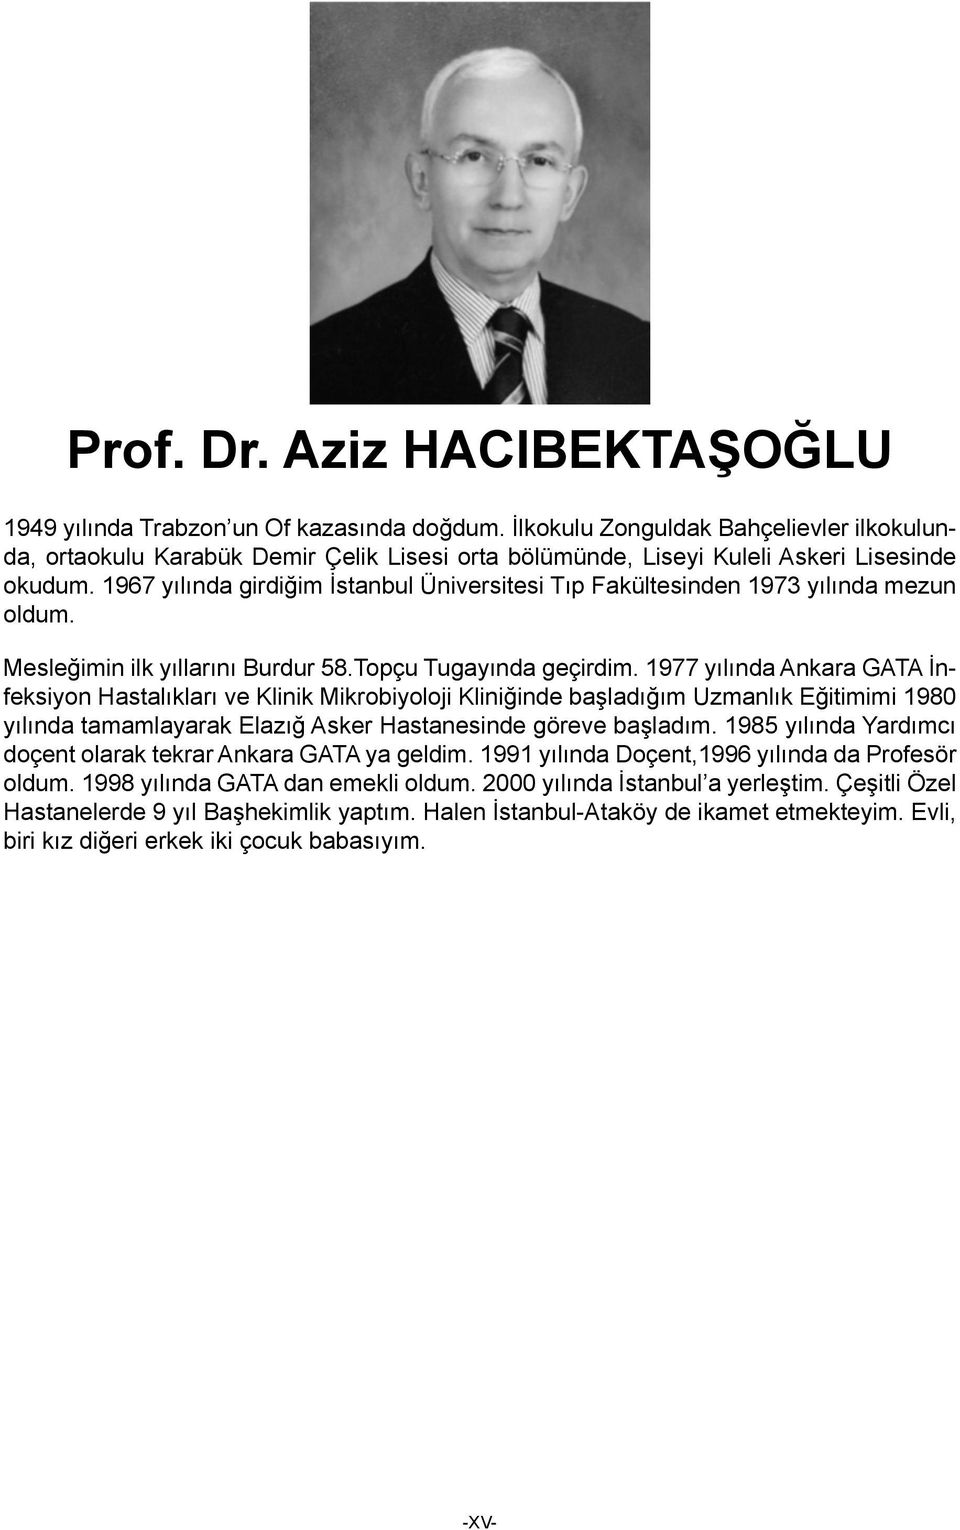 967 yılında girdiğim İstanbul Üniversitesi Tıp Fakültesinden 973 yılında mezun oldum. Mesleğimin ilk yıllarını Burdur 58.Topçu Tugayında geçirdim.